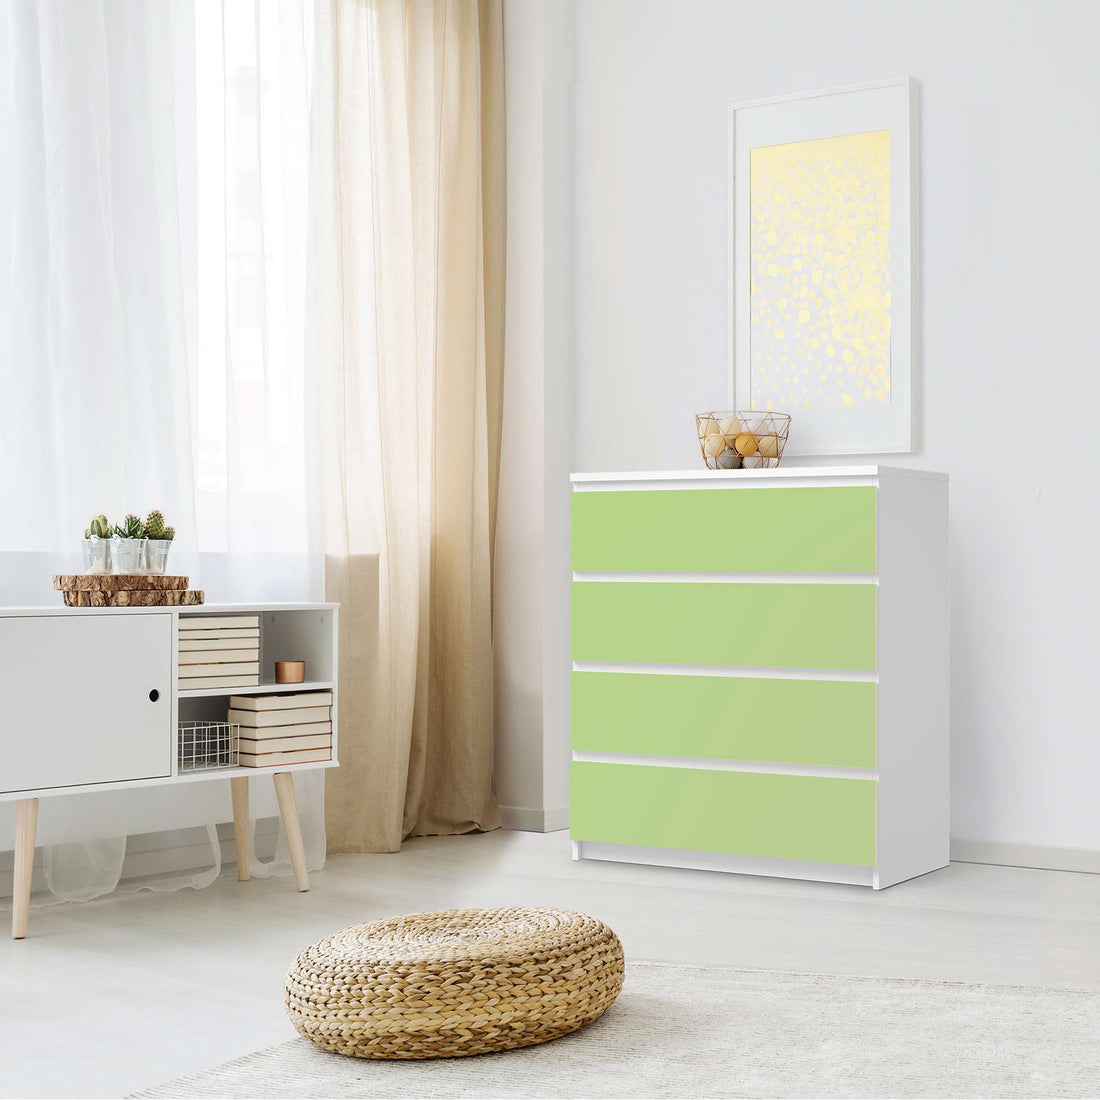 Folie für Möbel Hellgrün Light - IKEA Malm Kommode 4 Schubladen - Schlafzimmer